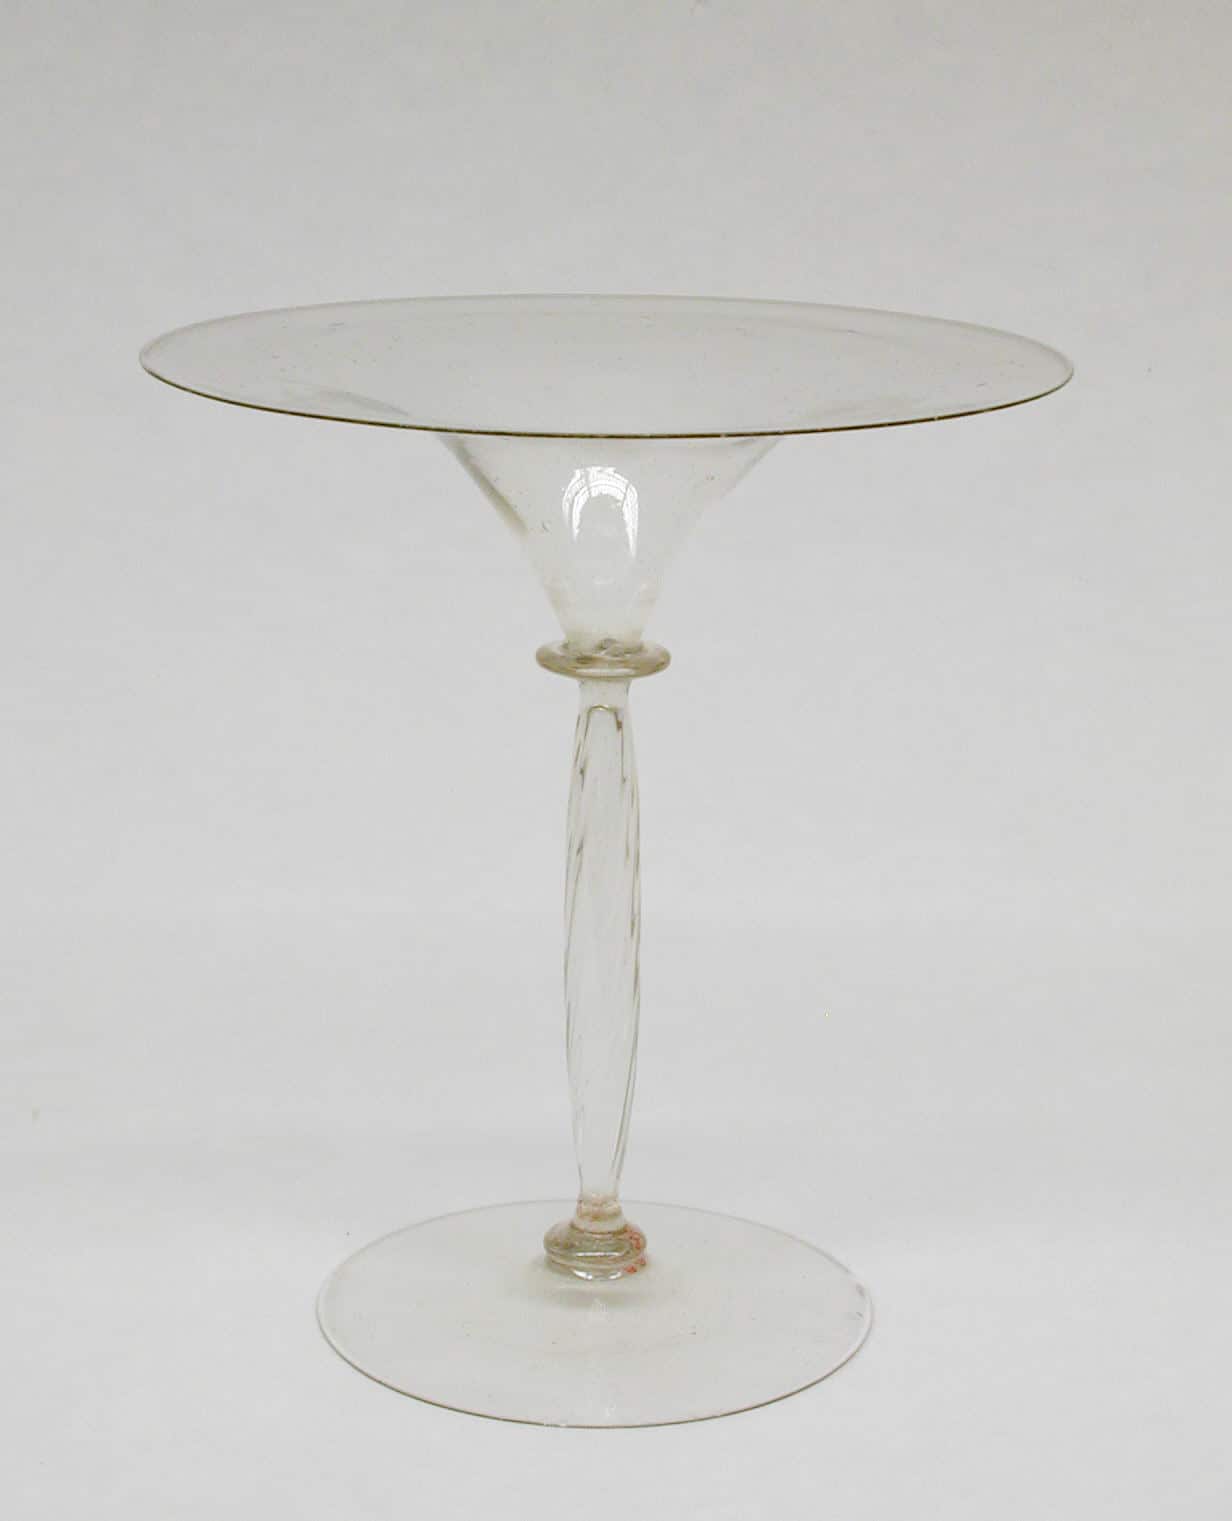 Verre à vin en cristallo vénitien, XVIIe siècle © MET Museum